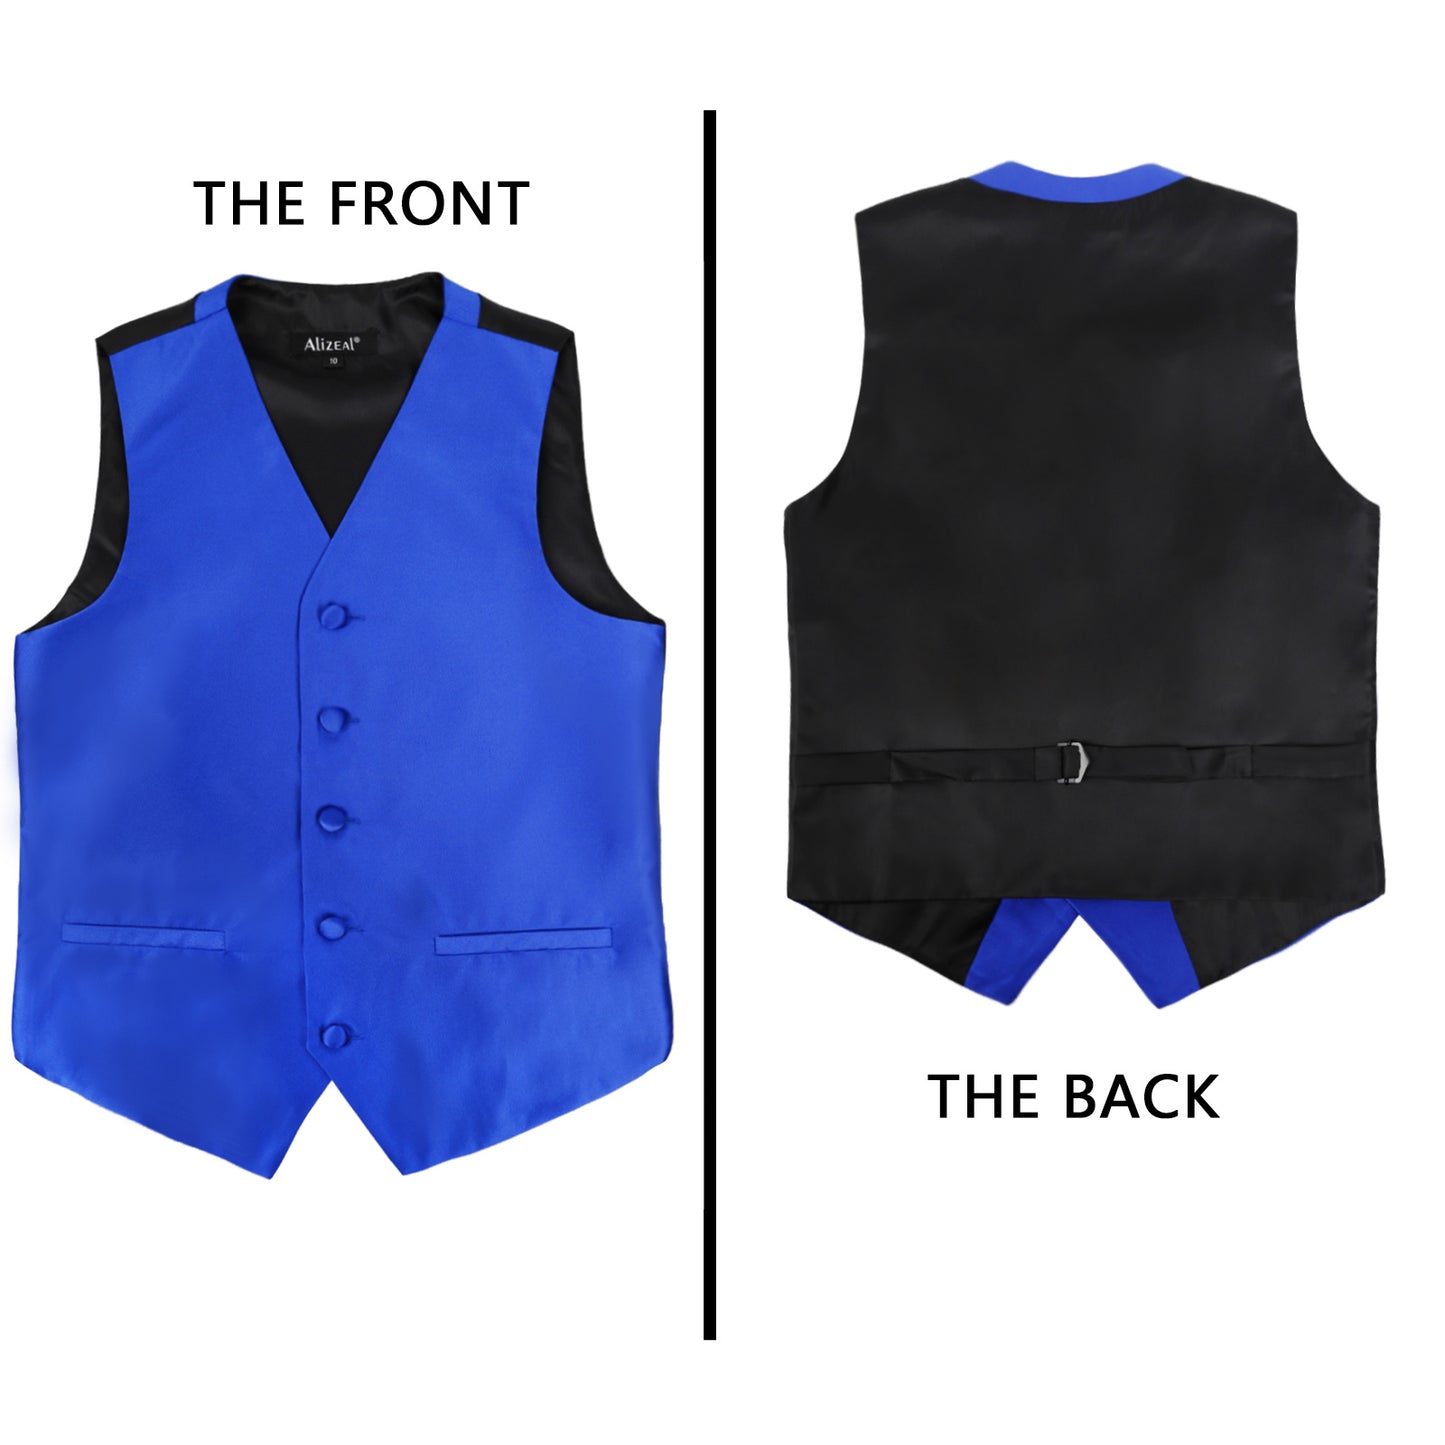 Boy's Classic Solid Bow Tie, Necktie and Suit Vest Set, 078-Royal Blue